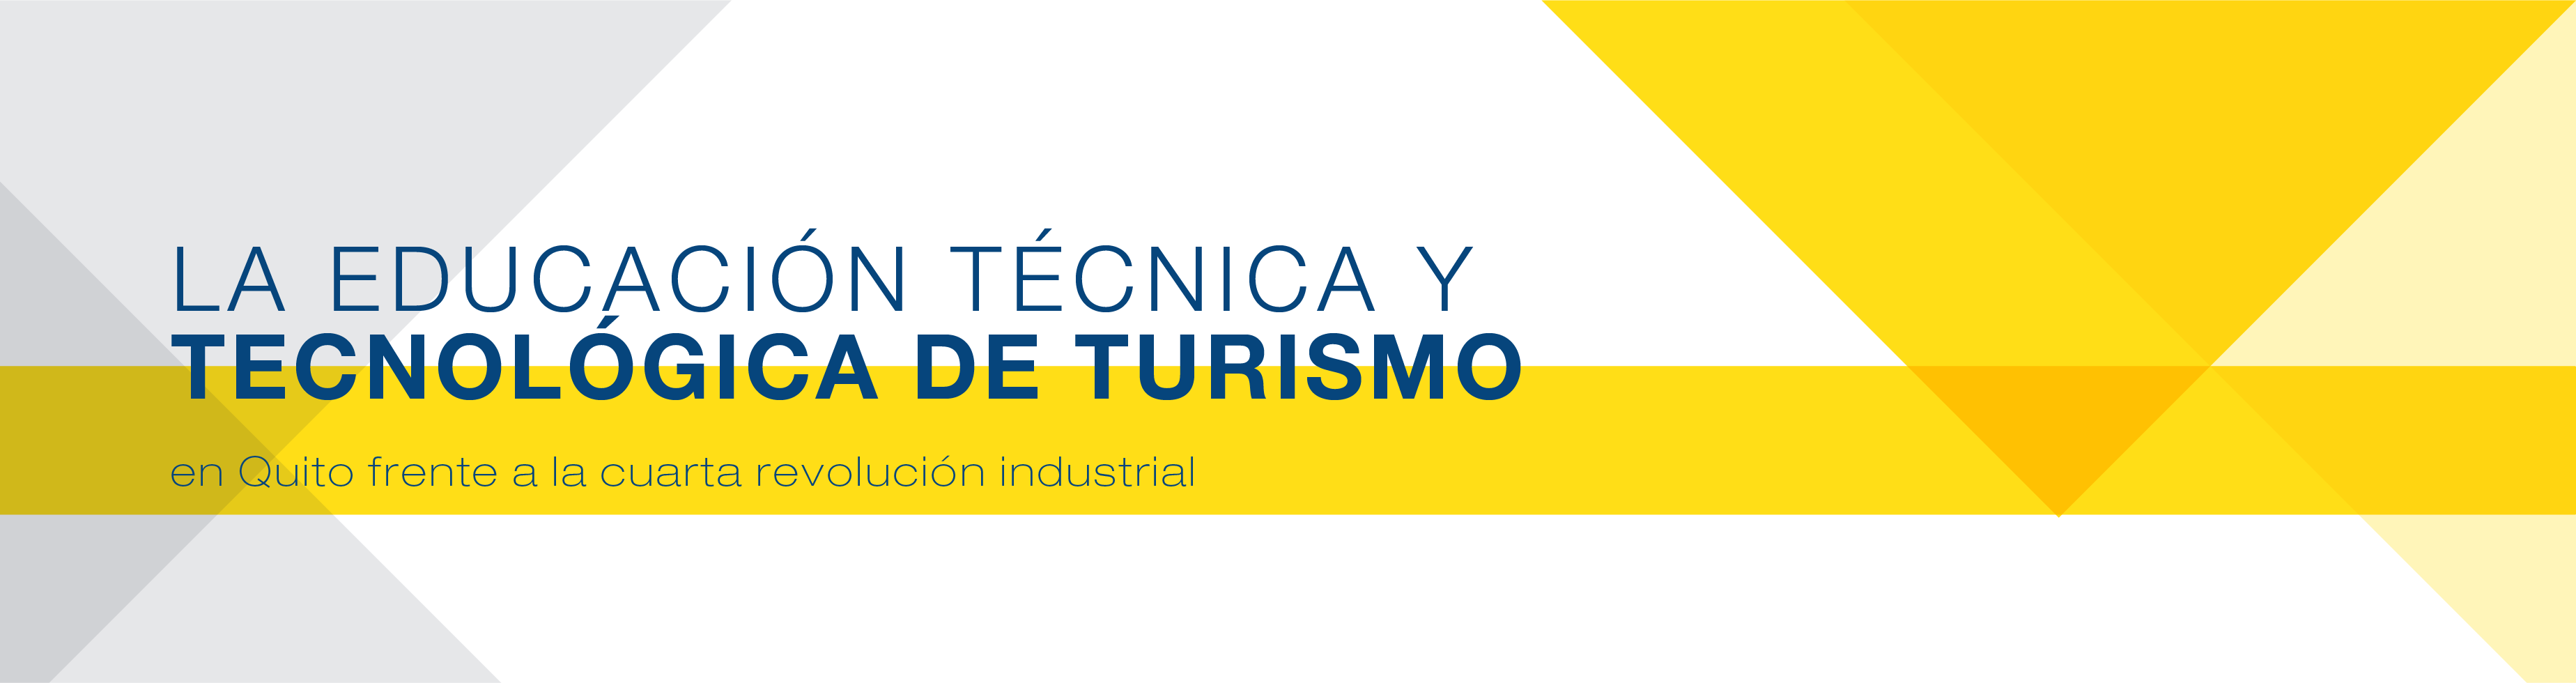 La educación técnica y tecnológica de Turismo en Quito frente a la cuarta revolución industrial